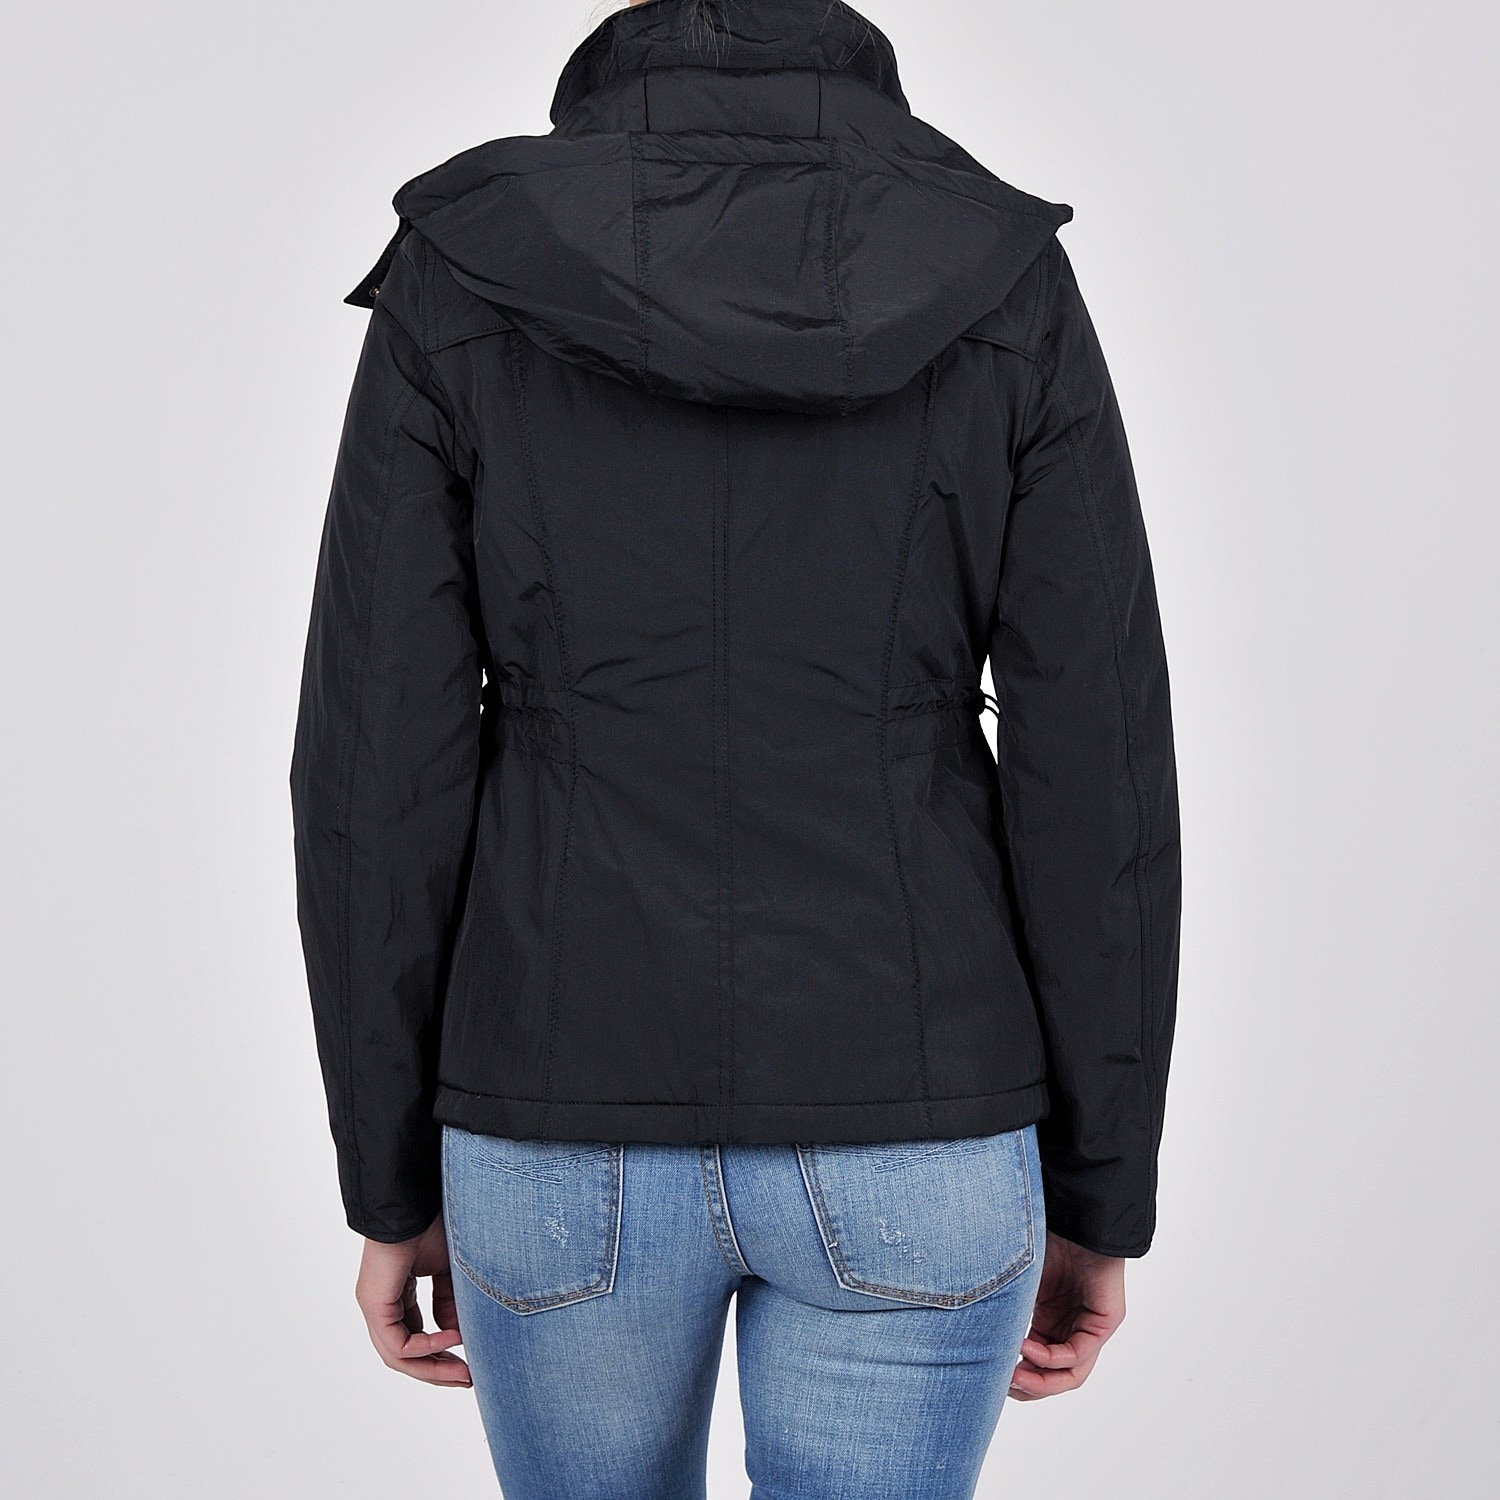 weatherproof women's jacket with detachable hood